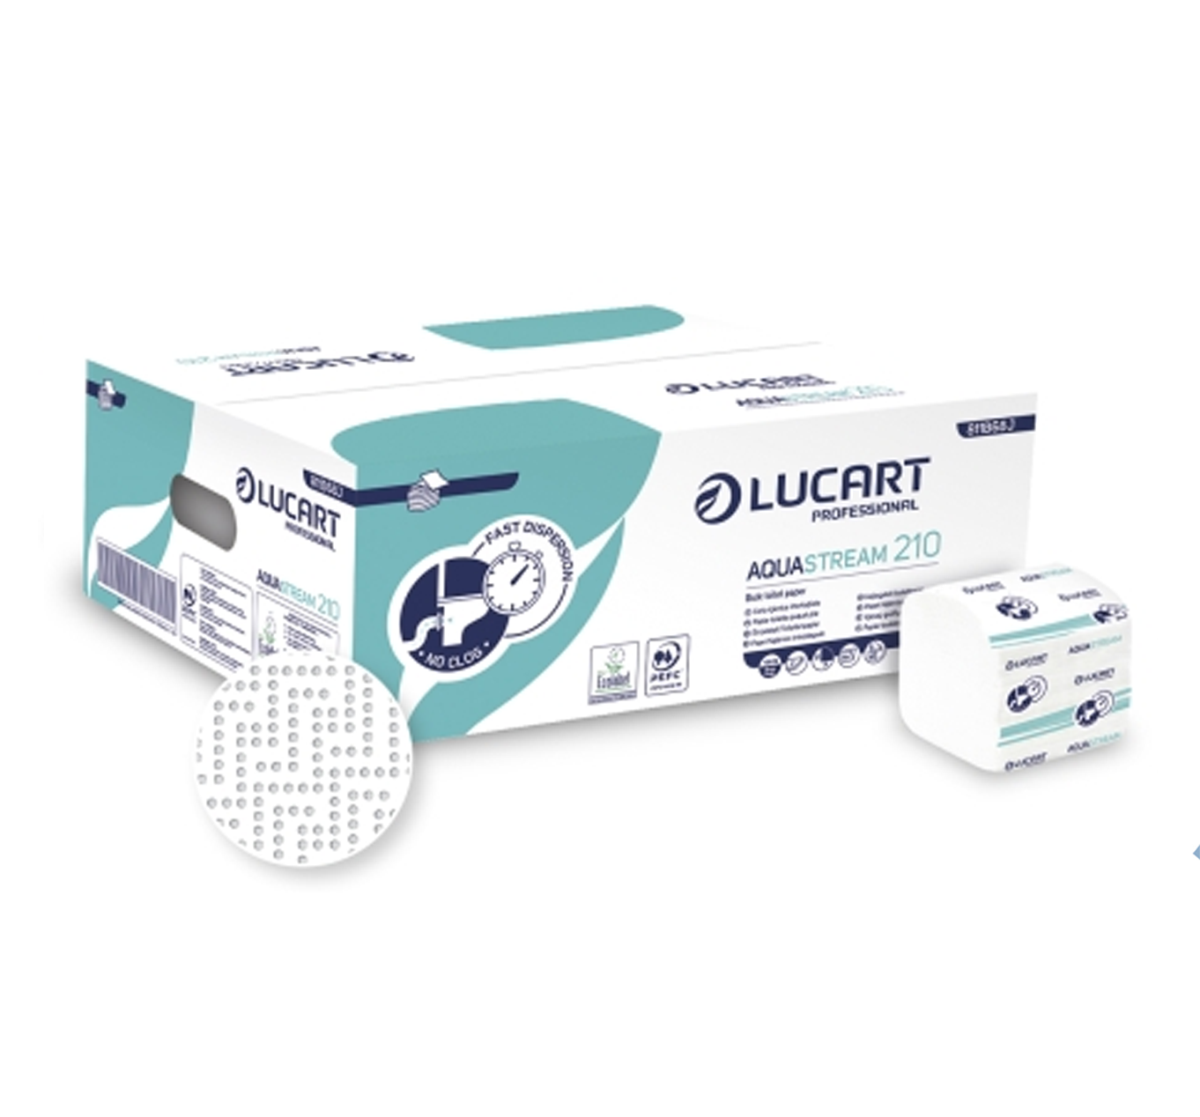 Click to view AquaStream Bulk Pack Toilet Tissue